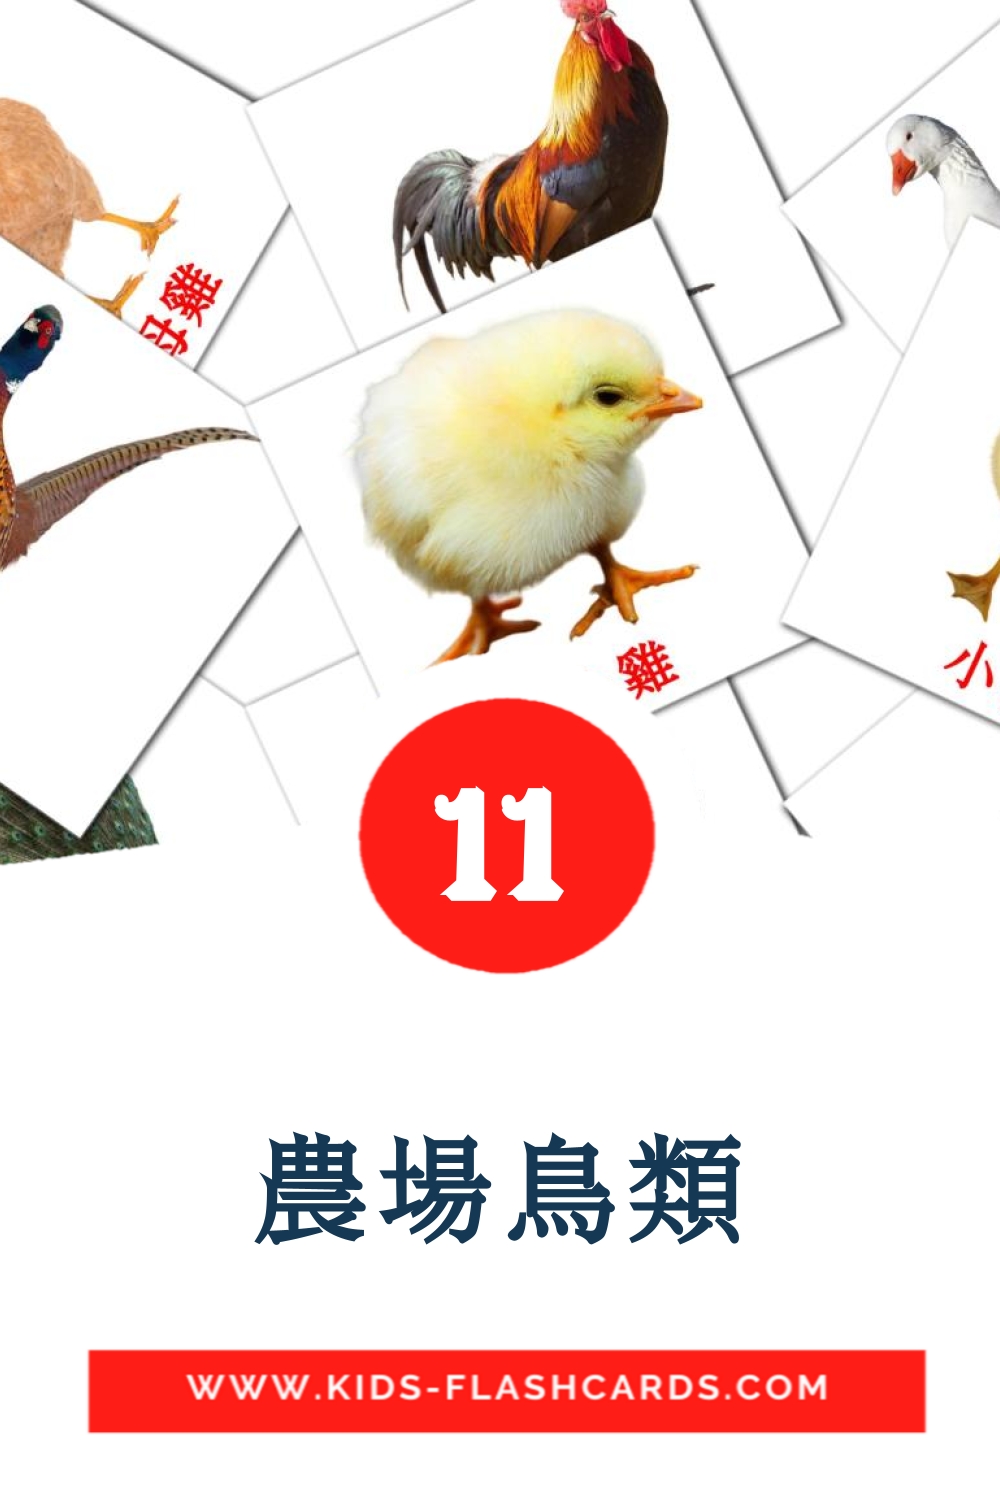 11 tarjetas didacticas de 農場鳥類 para el jardín de infancia en chino(tradicional)